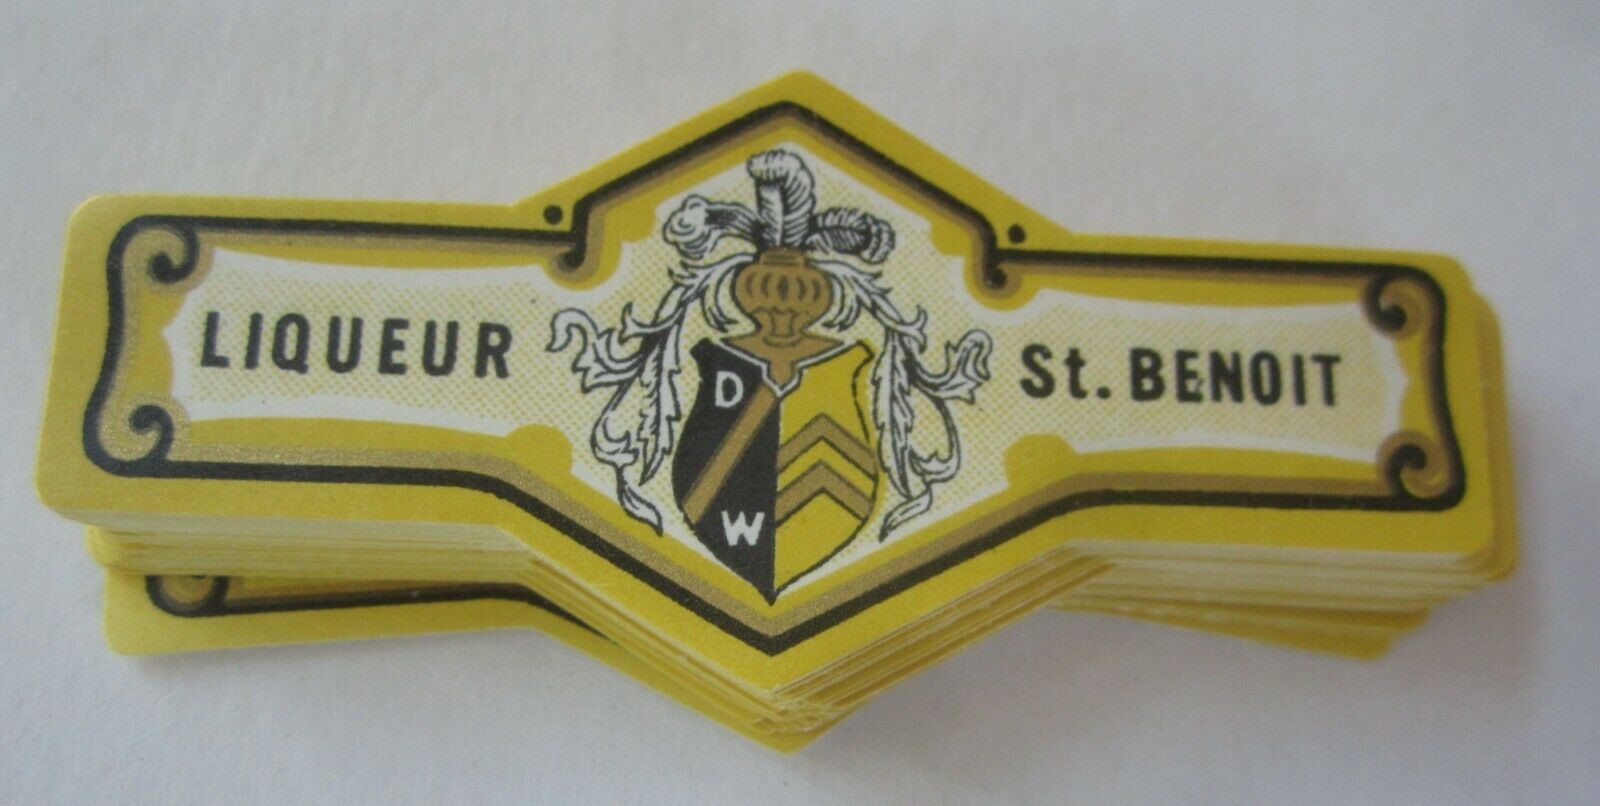  Lot of 100 Old Vintage - St. Benoit - Liqueur ...